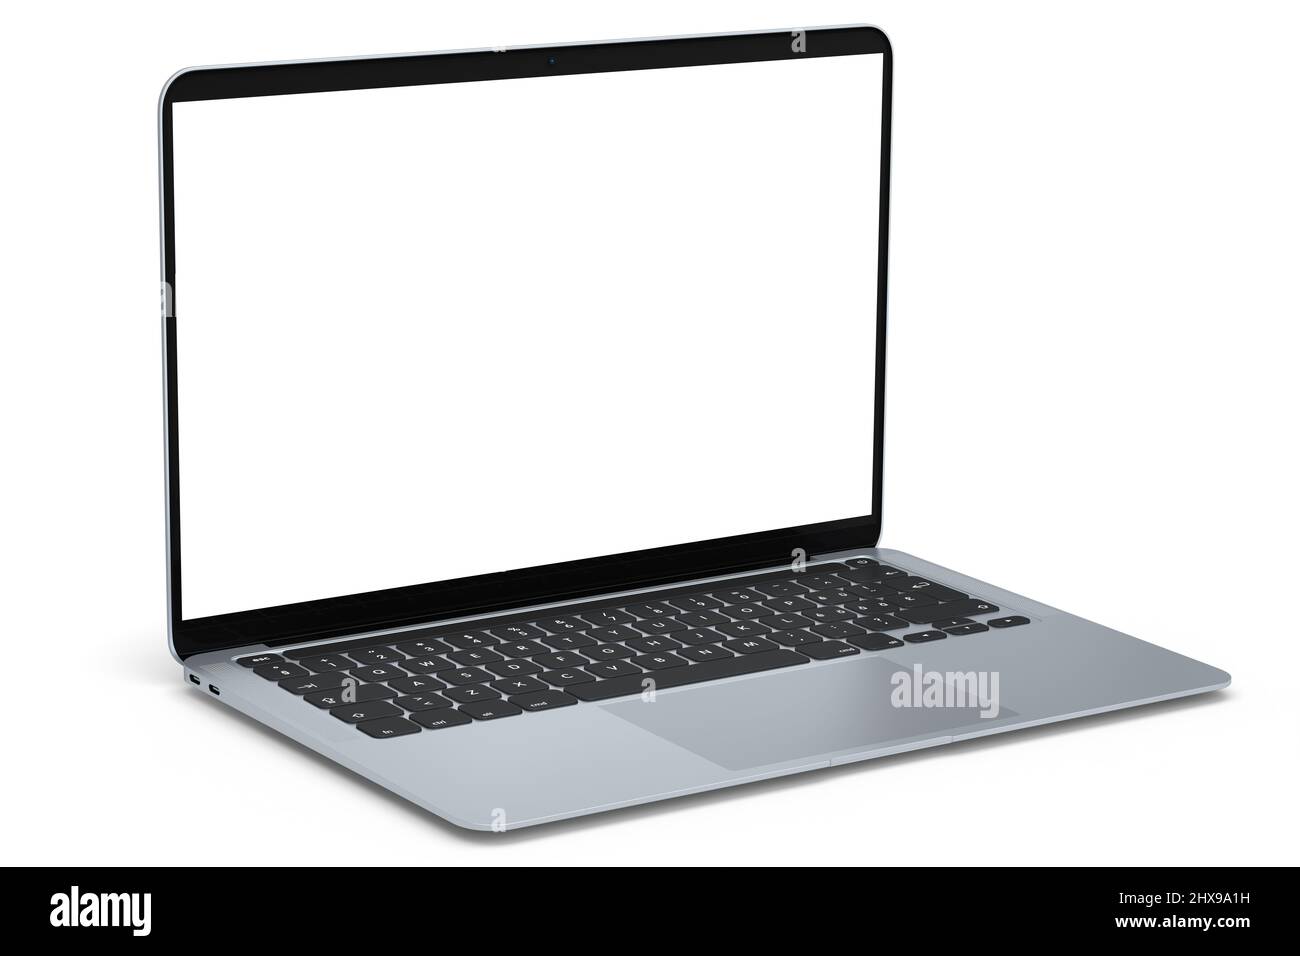 Portátil de aluminio realista con pantalla blanca vacía aislada sobre fondo blanco. 3D renderizado de ordenador portátil abierto para el hogar estudio workspa Foto de stock